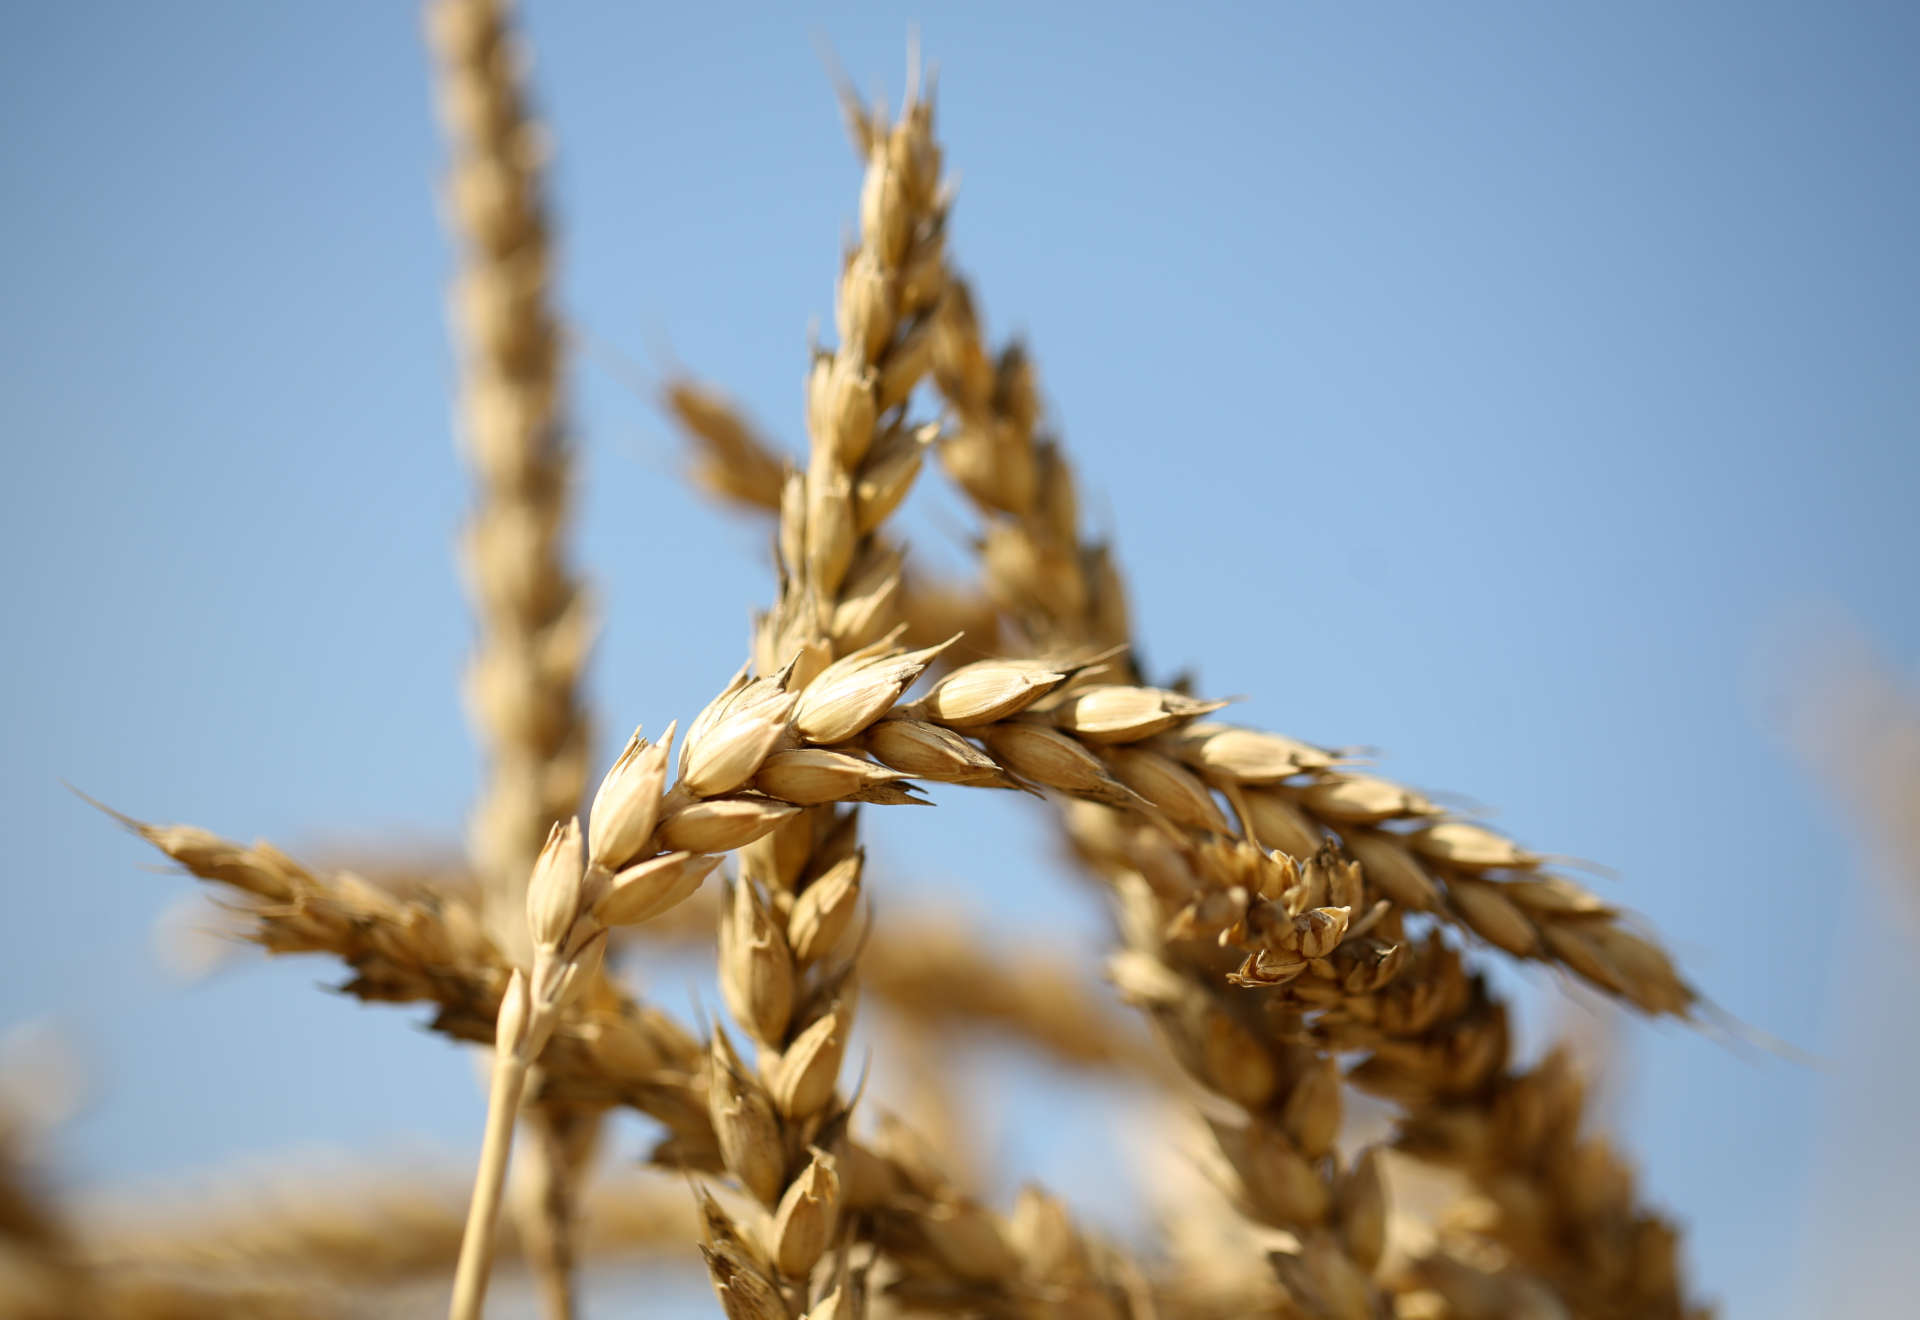 Итоговые цифры уборки озимой пшеницы в агрохолдинге «АСБ»